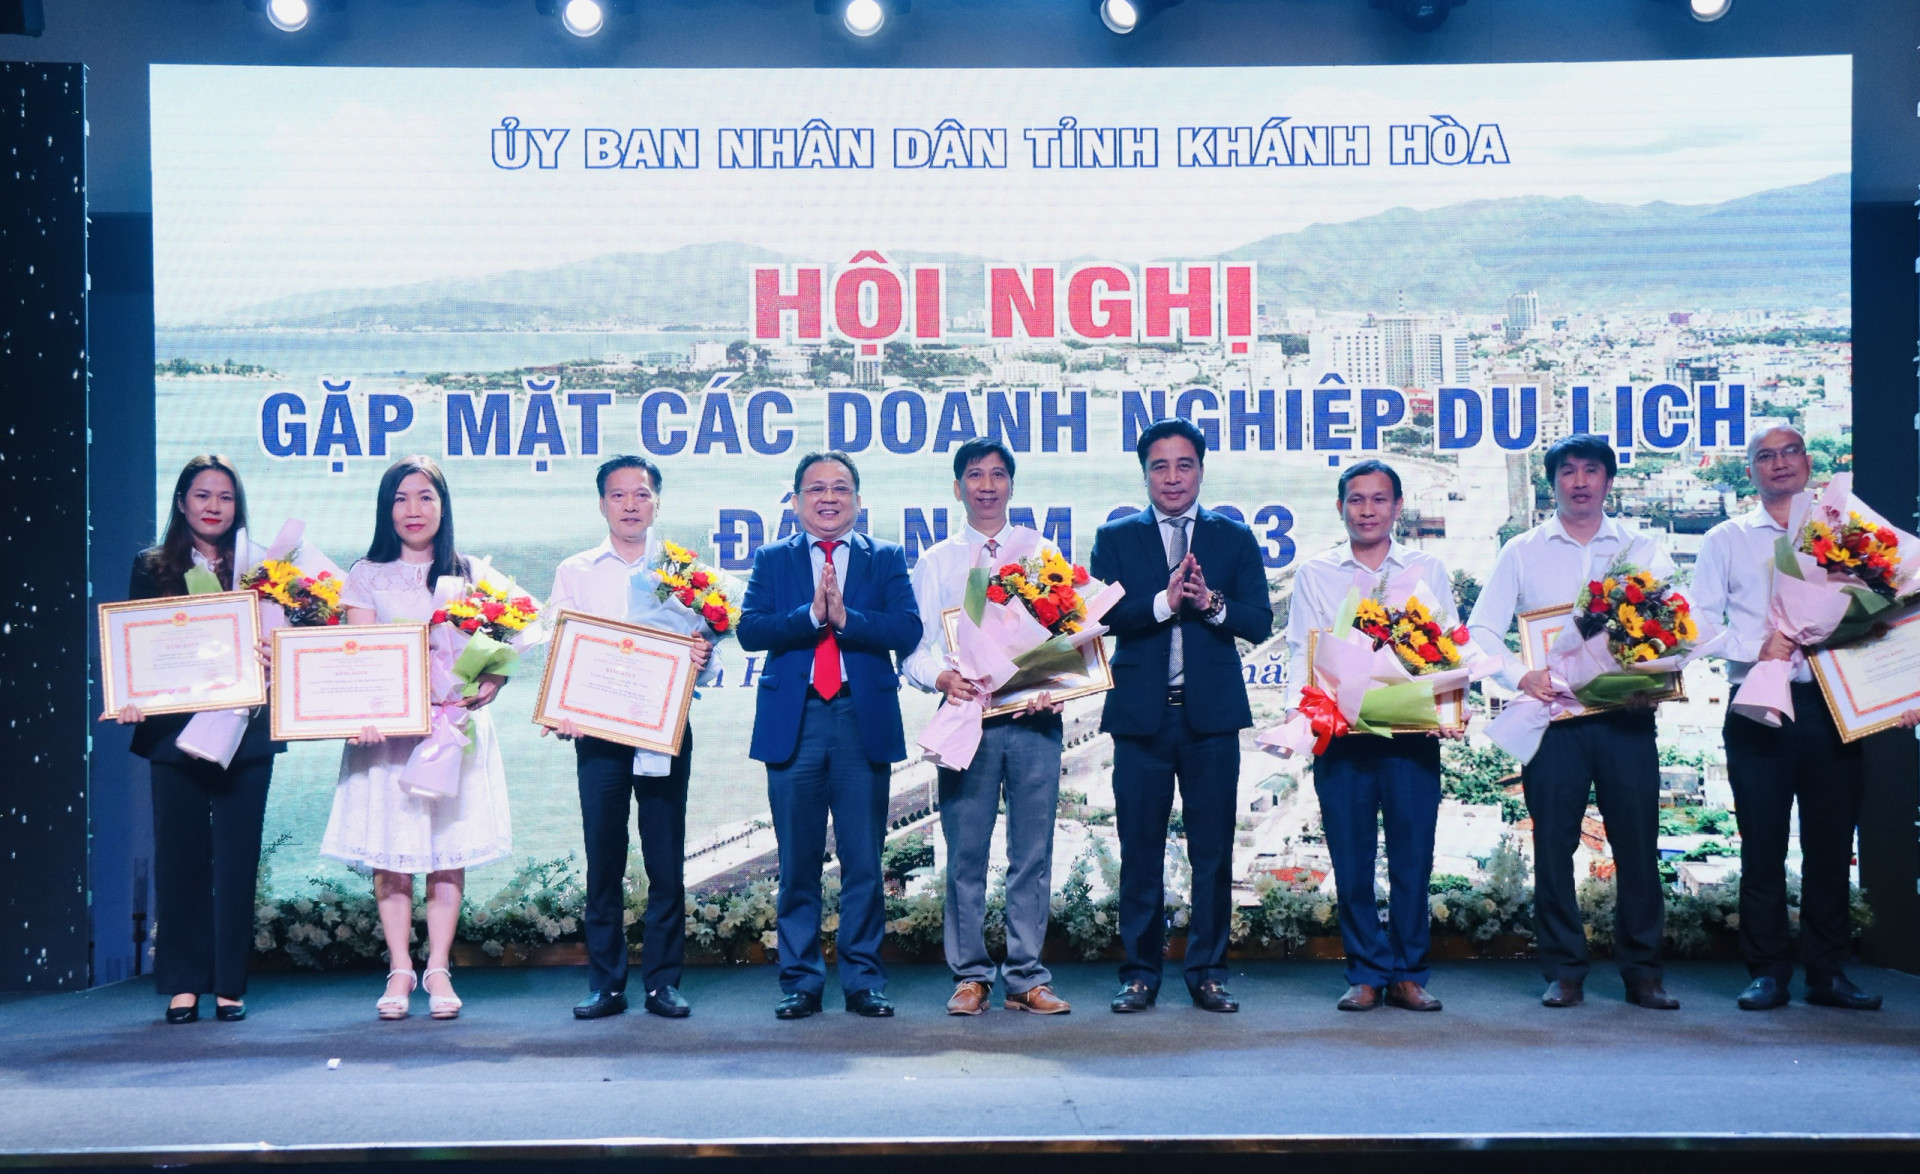 Ông Nguyễn Khắc Toàn và ông Lê Hữu Hoàng trao Bằng khen của Bộ trưởng Bộ Văn hóa - Thể thao và Du lịch cho các tập thể có nhiều đóng góp cho sự phát triển của Du lịch Khánh Hòa.